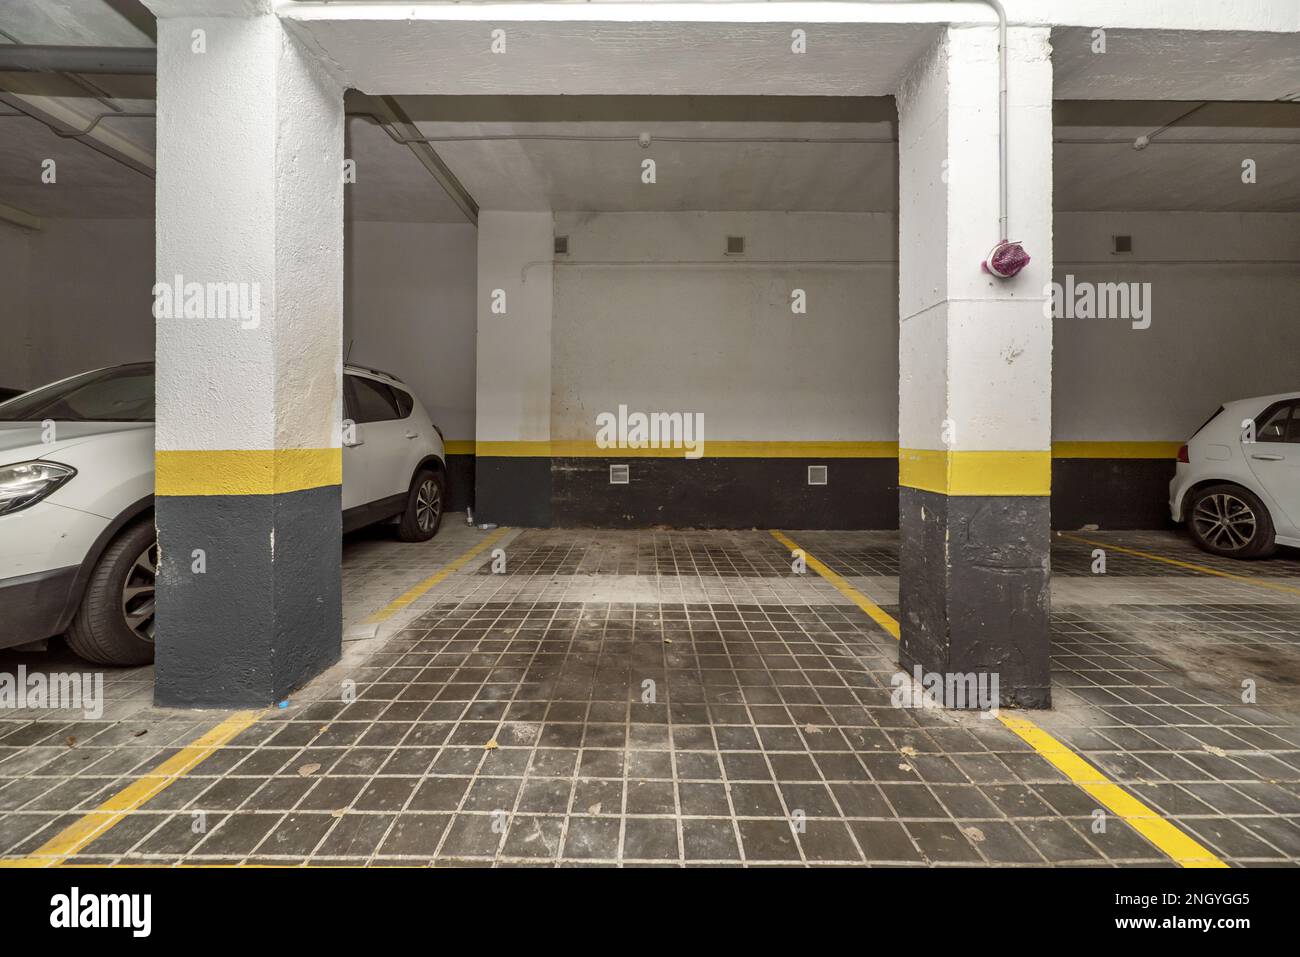 Posti auto delimitati con vernice gialla al piano terra di un edificio con garage e veicoli parcheggiati Foto Stock